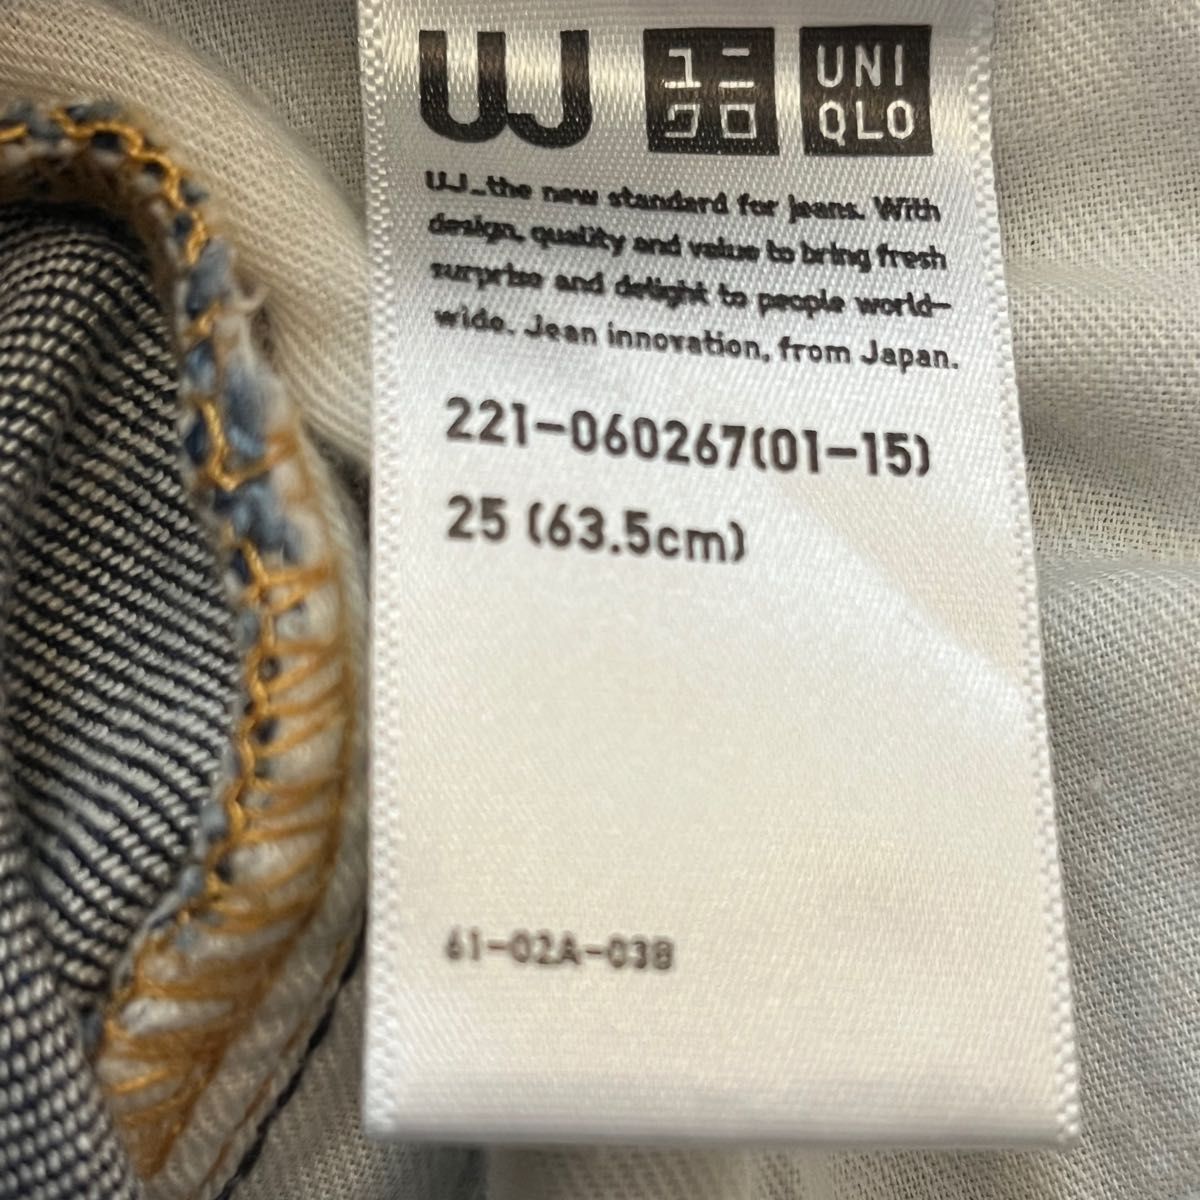 ユニクロ　 UJジーンズ　レディース　 スキニーフィットストレート　25 (63.5cm)美品　ほぼ未使用品